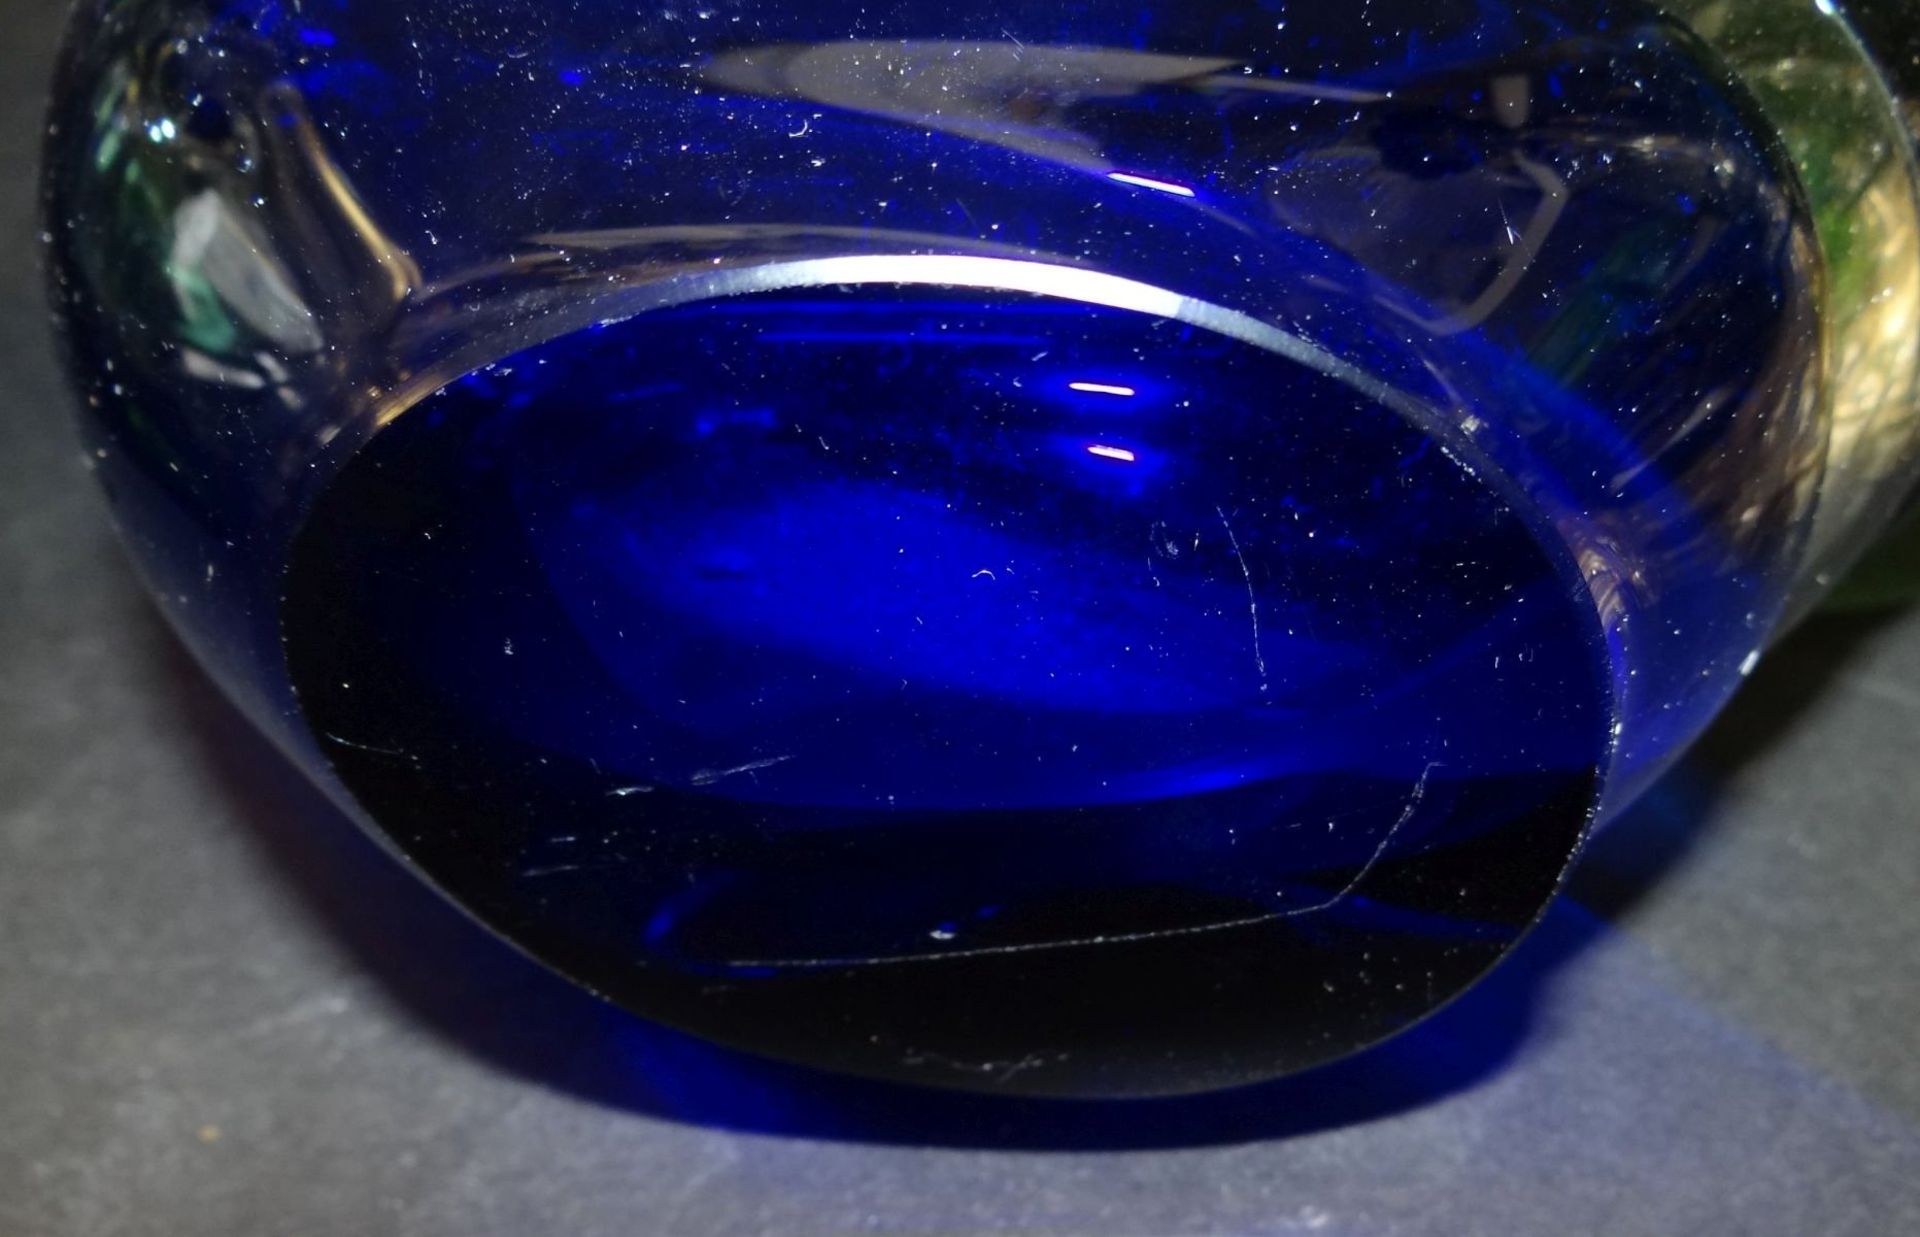 grosse, schwere Kunstglas-Vase, grün/weiss/blau, 18x14 c - Image 4 of 4